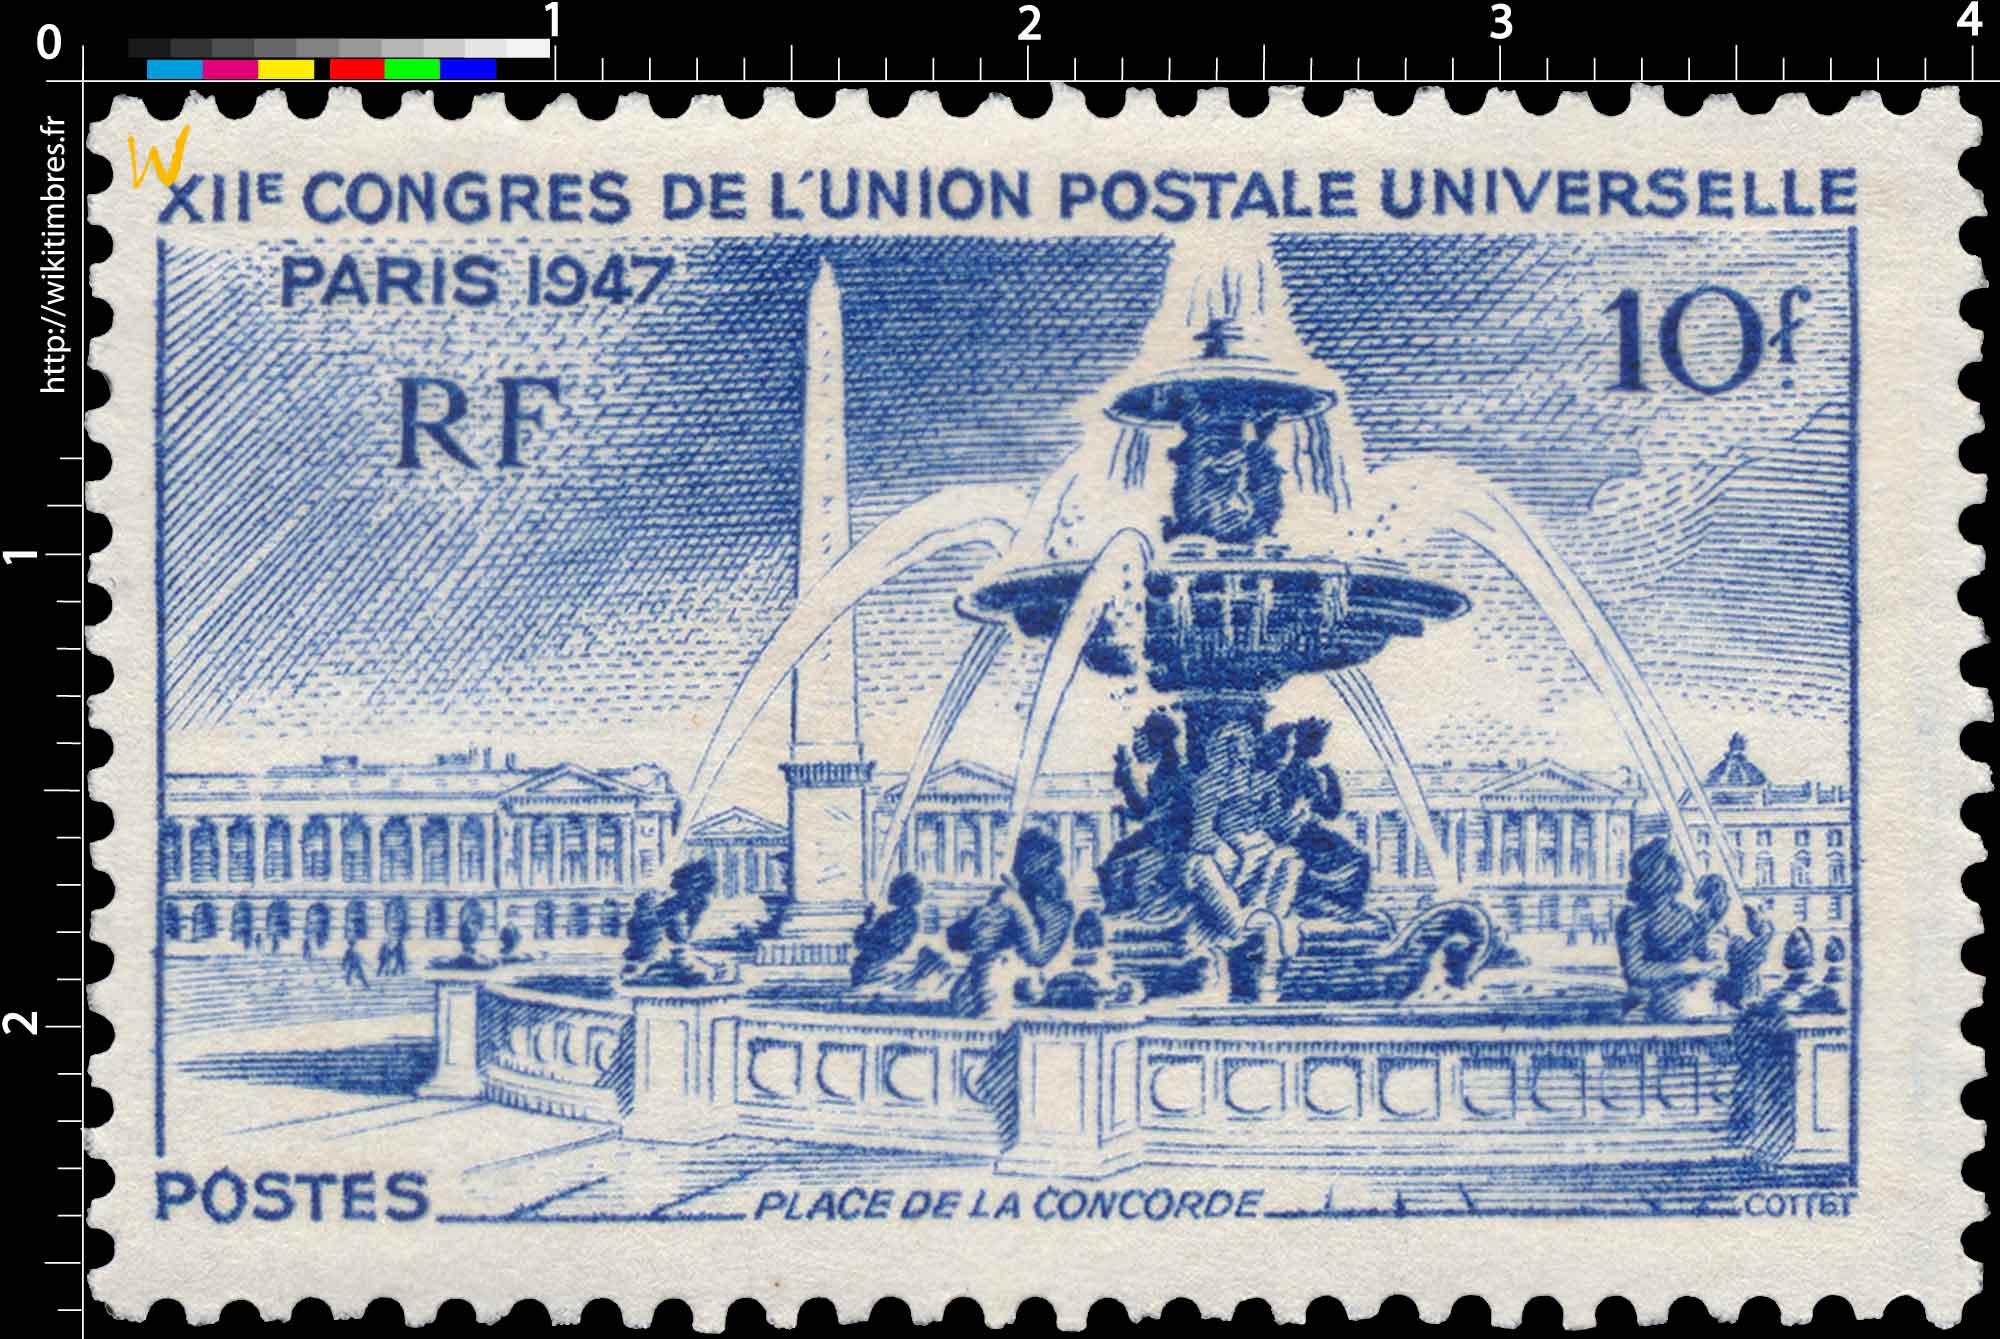 XIIe CONGRES DE L'UNION POSTALE UNIVERSELLE PARIS 1947 PLACE DE LA CONCORDE